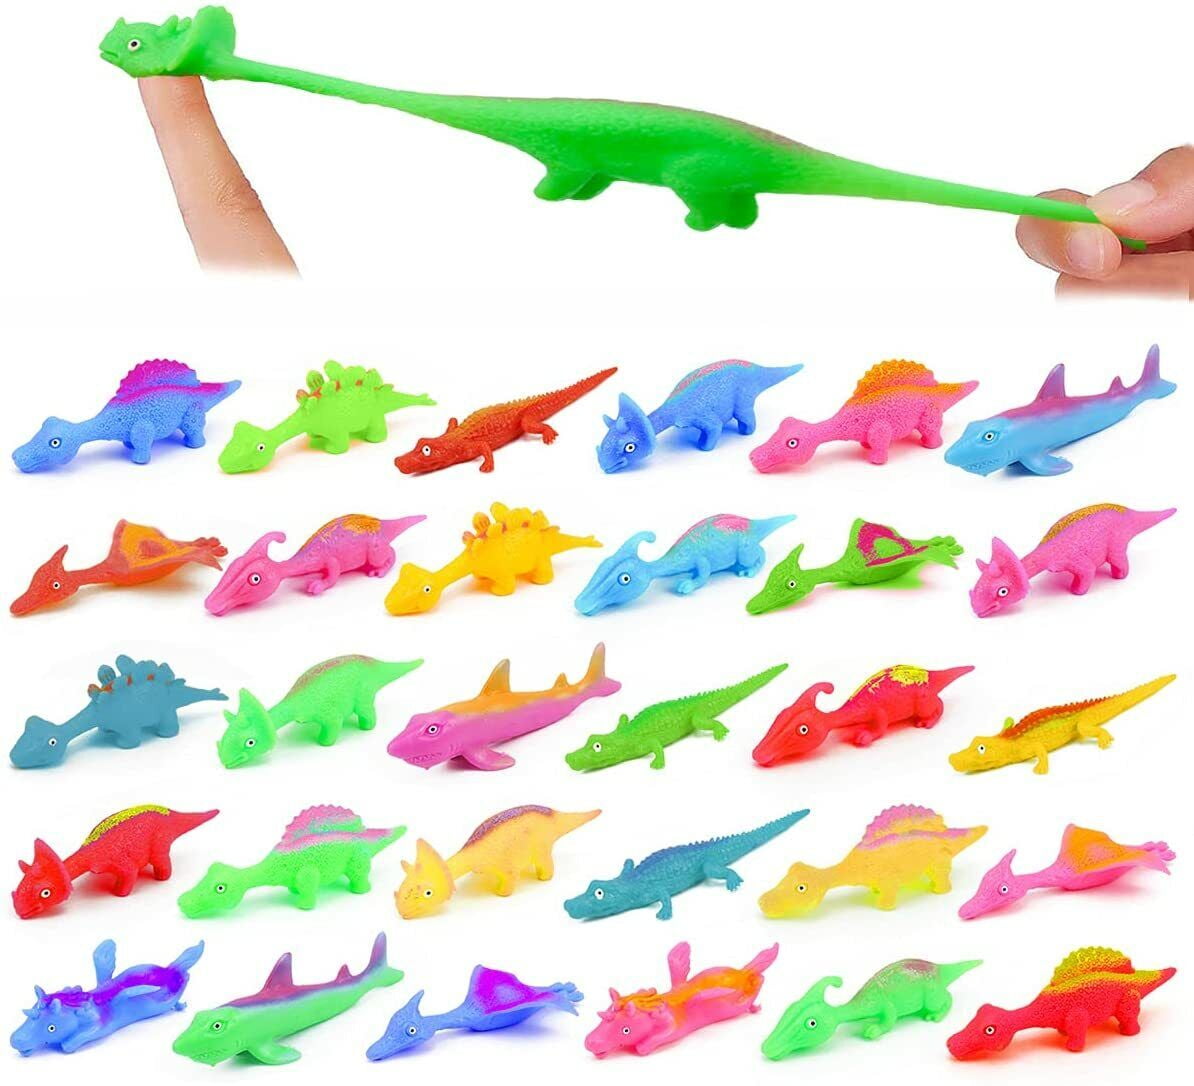 Best gift🎁Slingshot Dinosaur Finger ToyS - Gloniawor